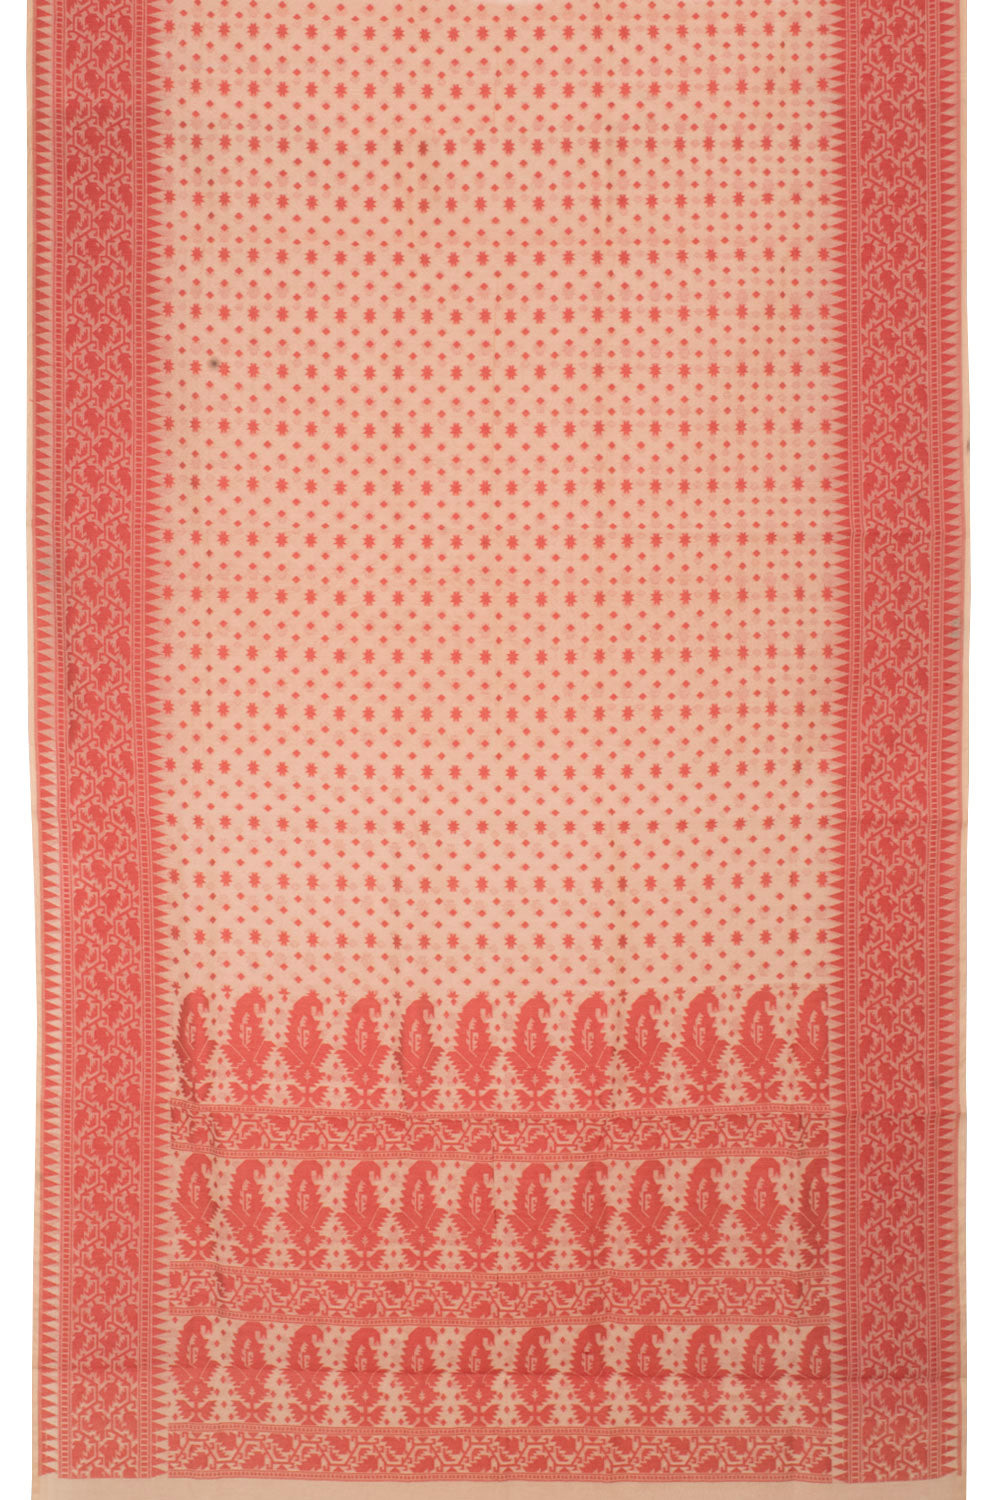 Handloom Dhakai Style Cotton Saree 10057781